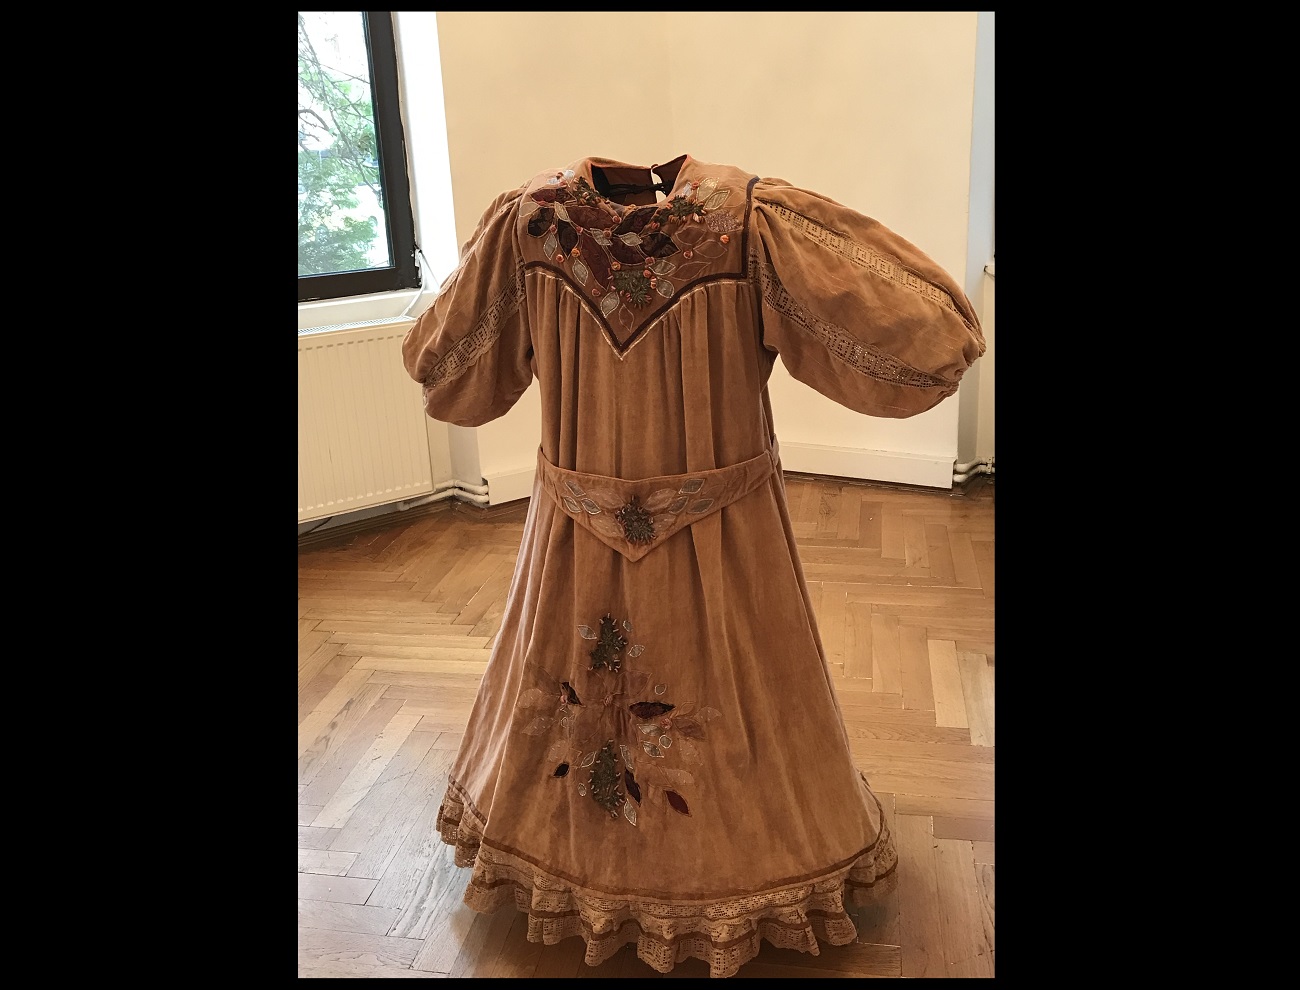 rochie de georgeta năpăruș din colecția dalina bădescu, curatorial.ro